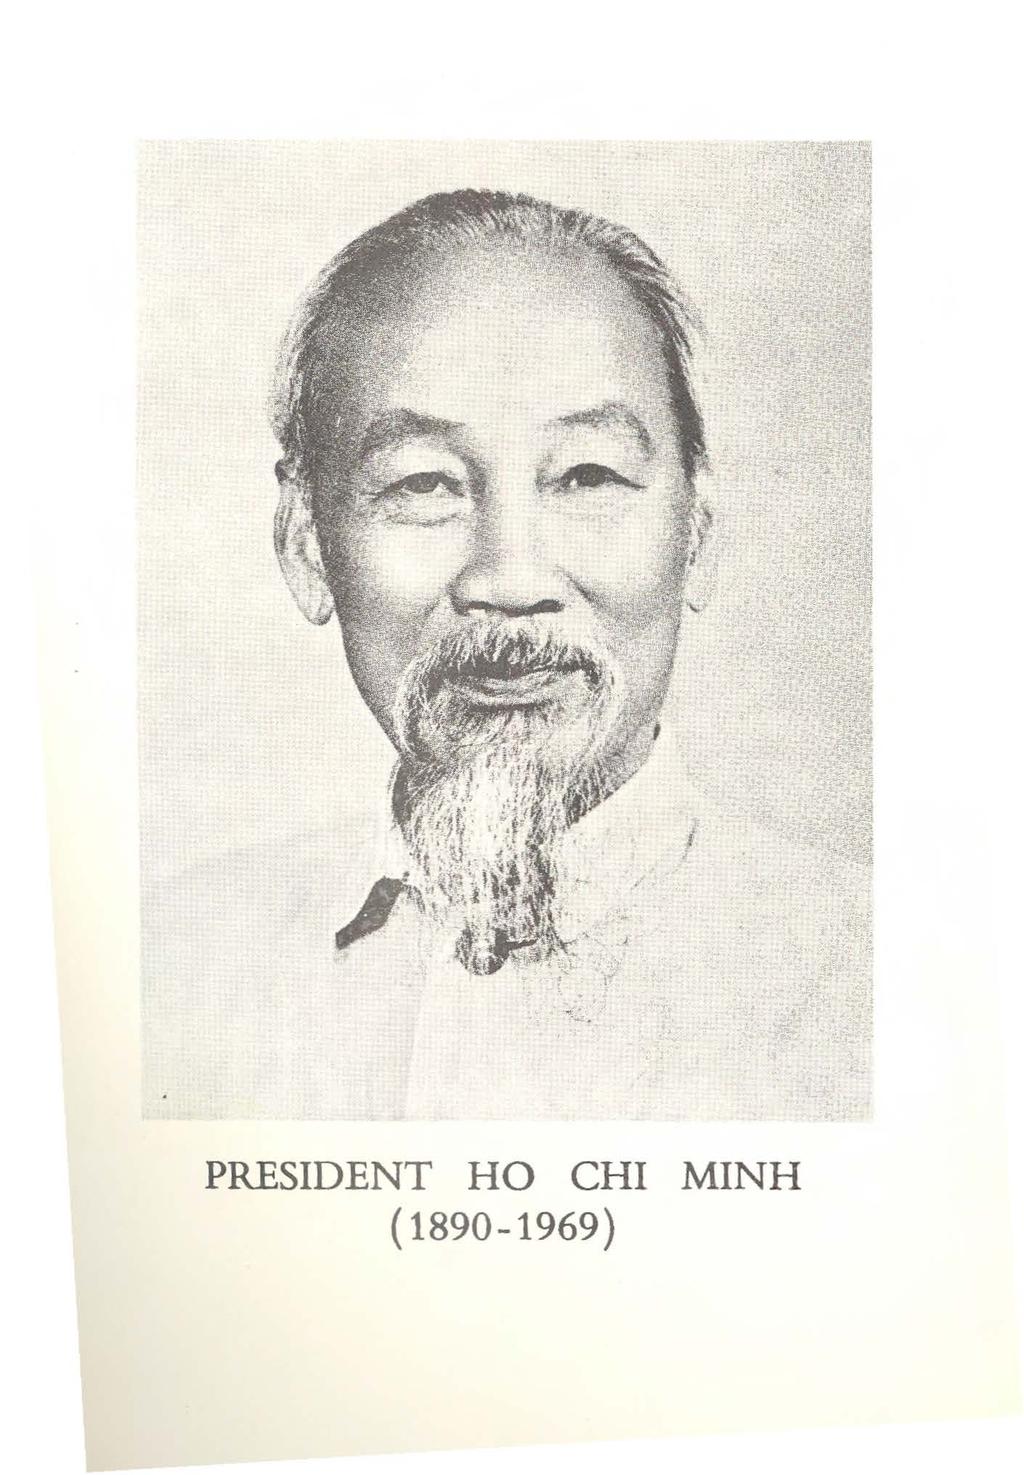 PRESIDENT HO CHI